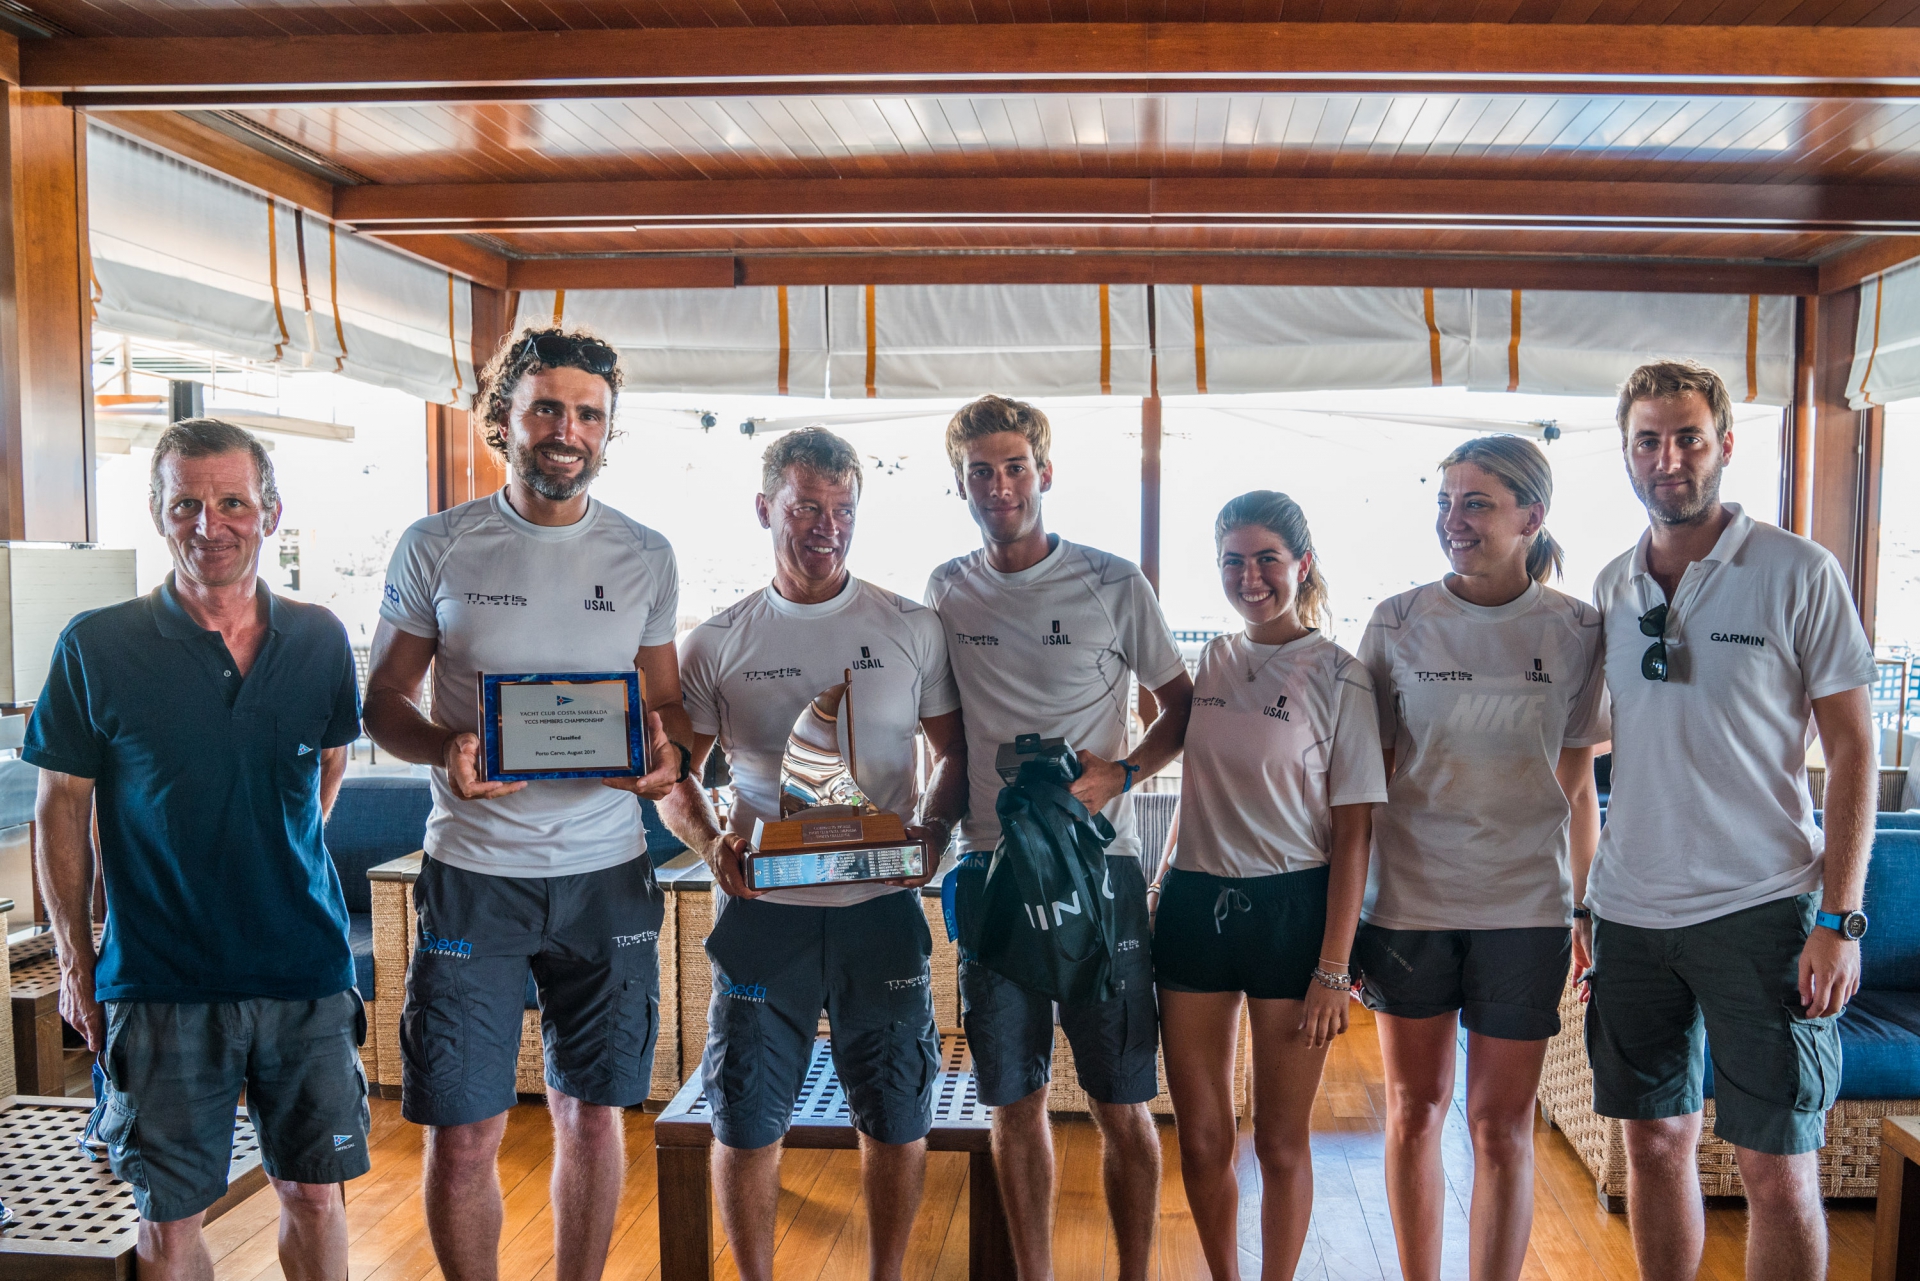 Luca Locatelli conquista il titolo di Campione Sociale 2019 - NEWS - Yacht Club Costa Smeralda